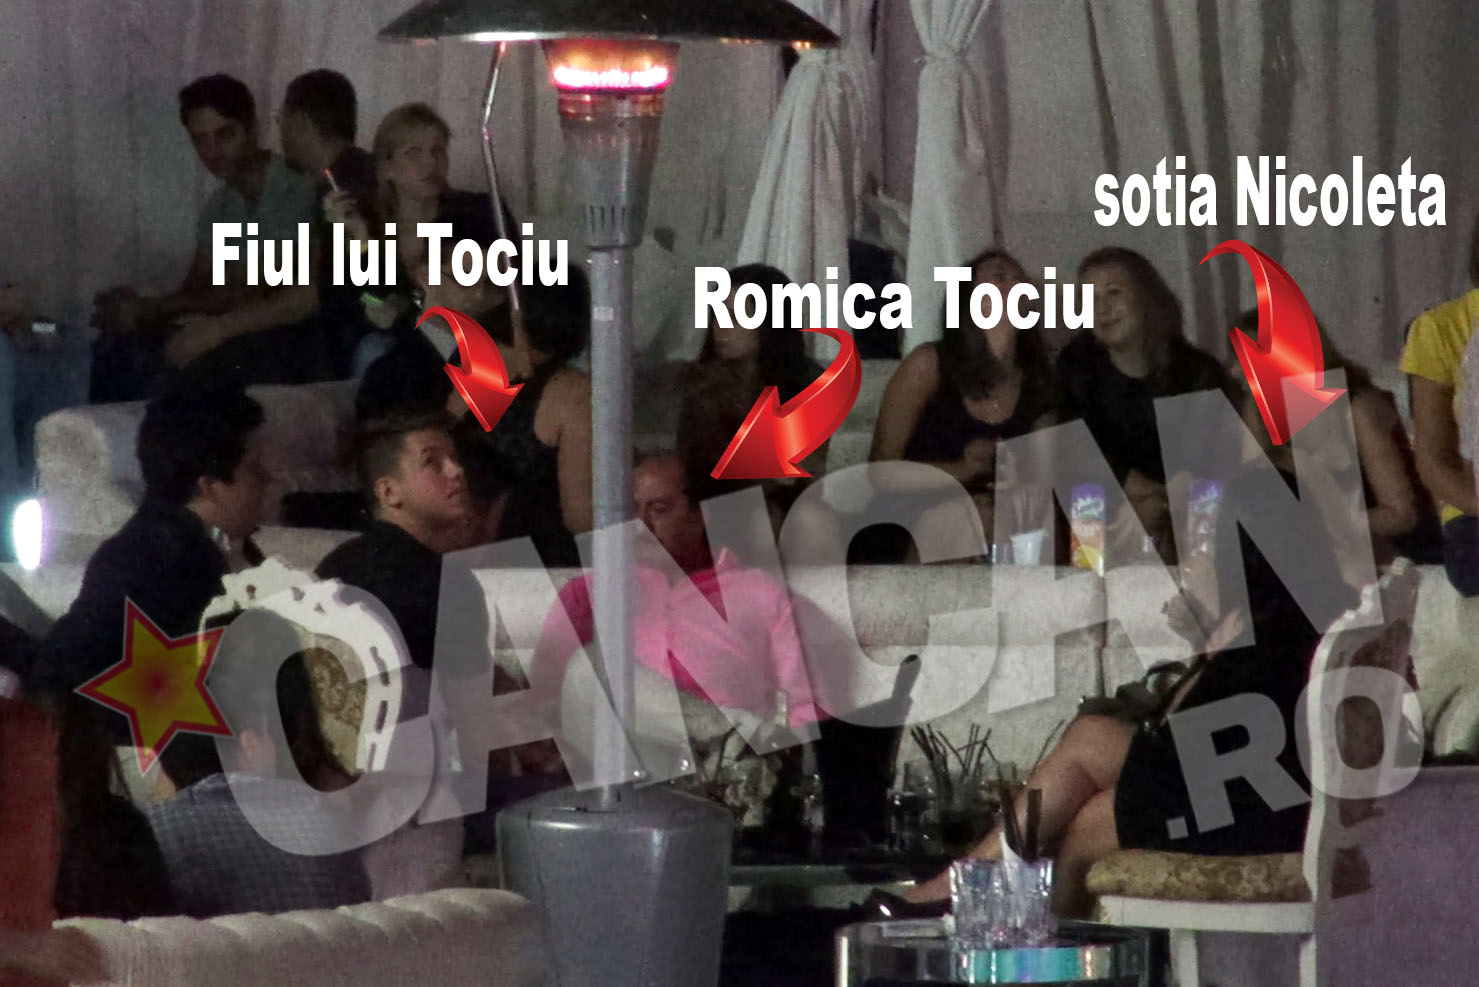 Romica Tociu, sotia sa, Nicoleta si fiul lor si-au petrecut seara de sambata in club